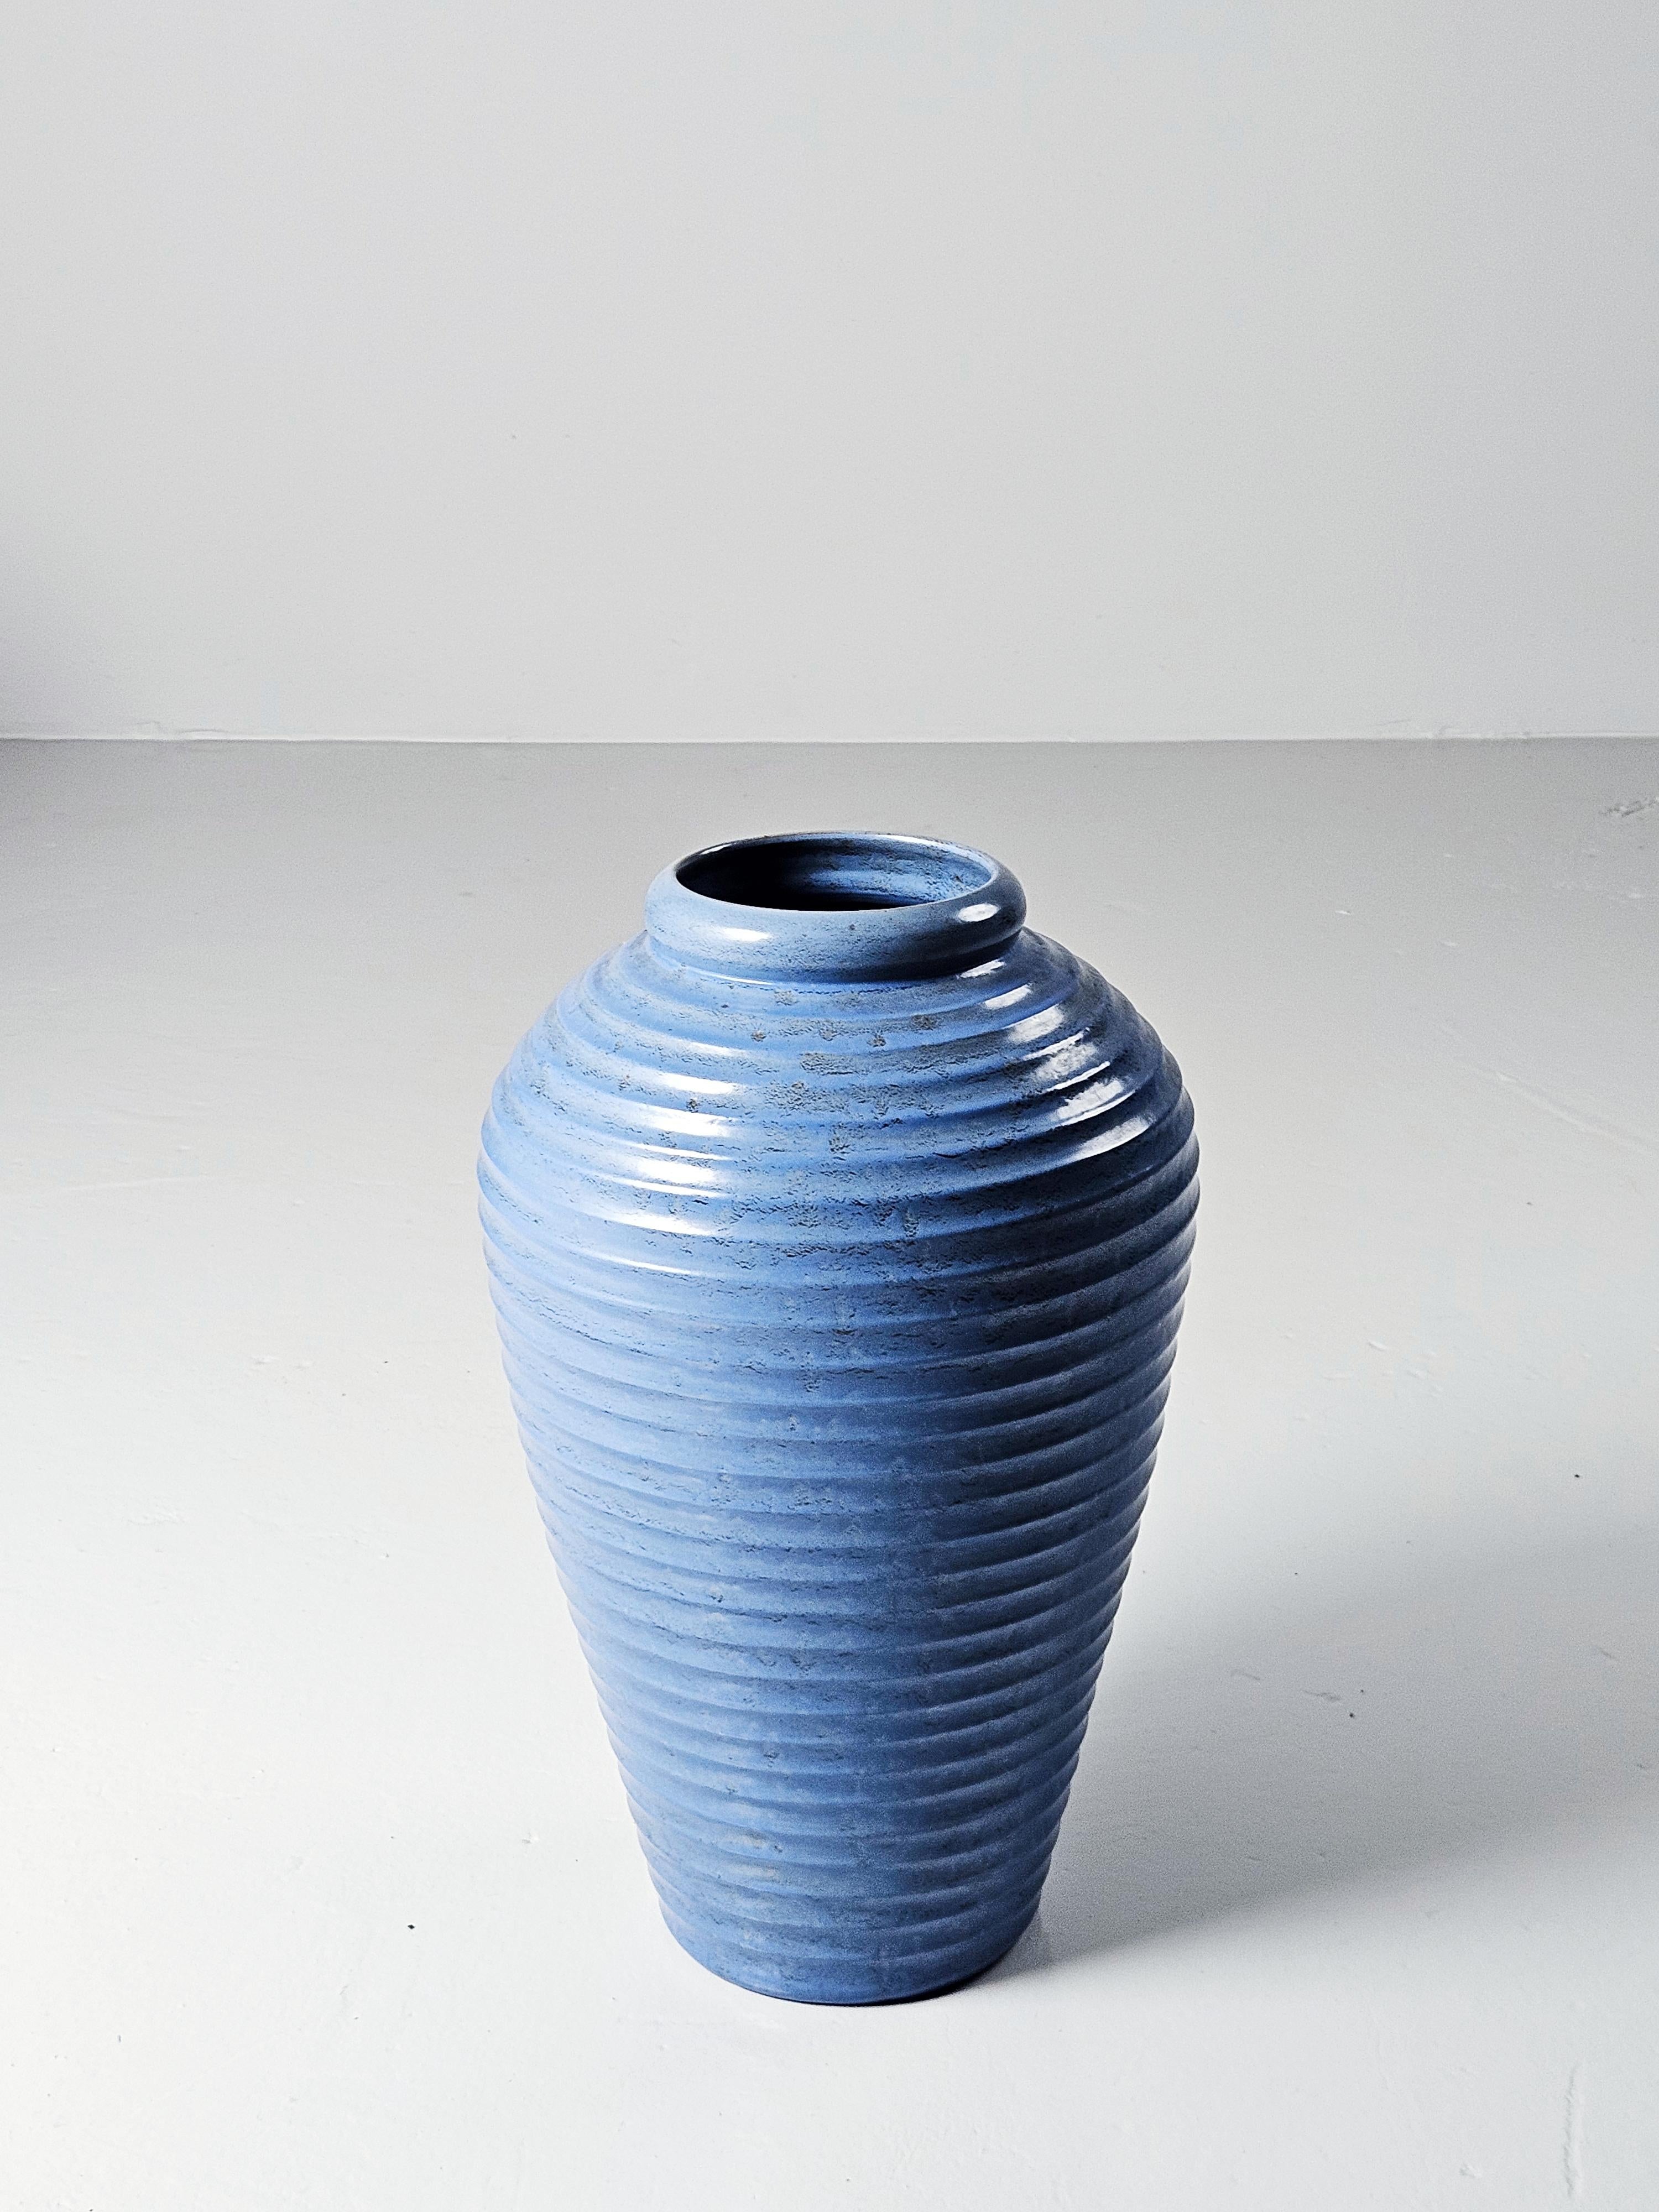 Vase de sol conçu par Jerk Werkmäster et produit par Nittsjö au milieu du XXe siècle. 

Werkmäster a été le directeur artistique de Nittsjö Ceramics entre 1933 et 1967.